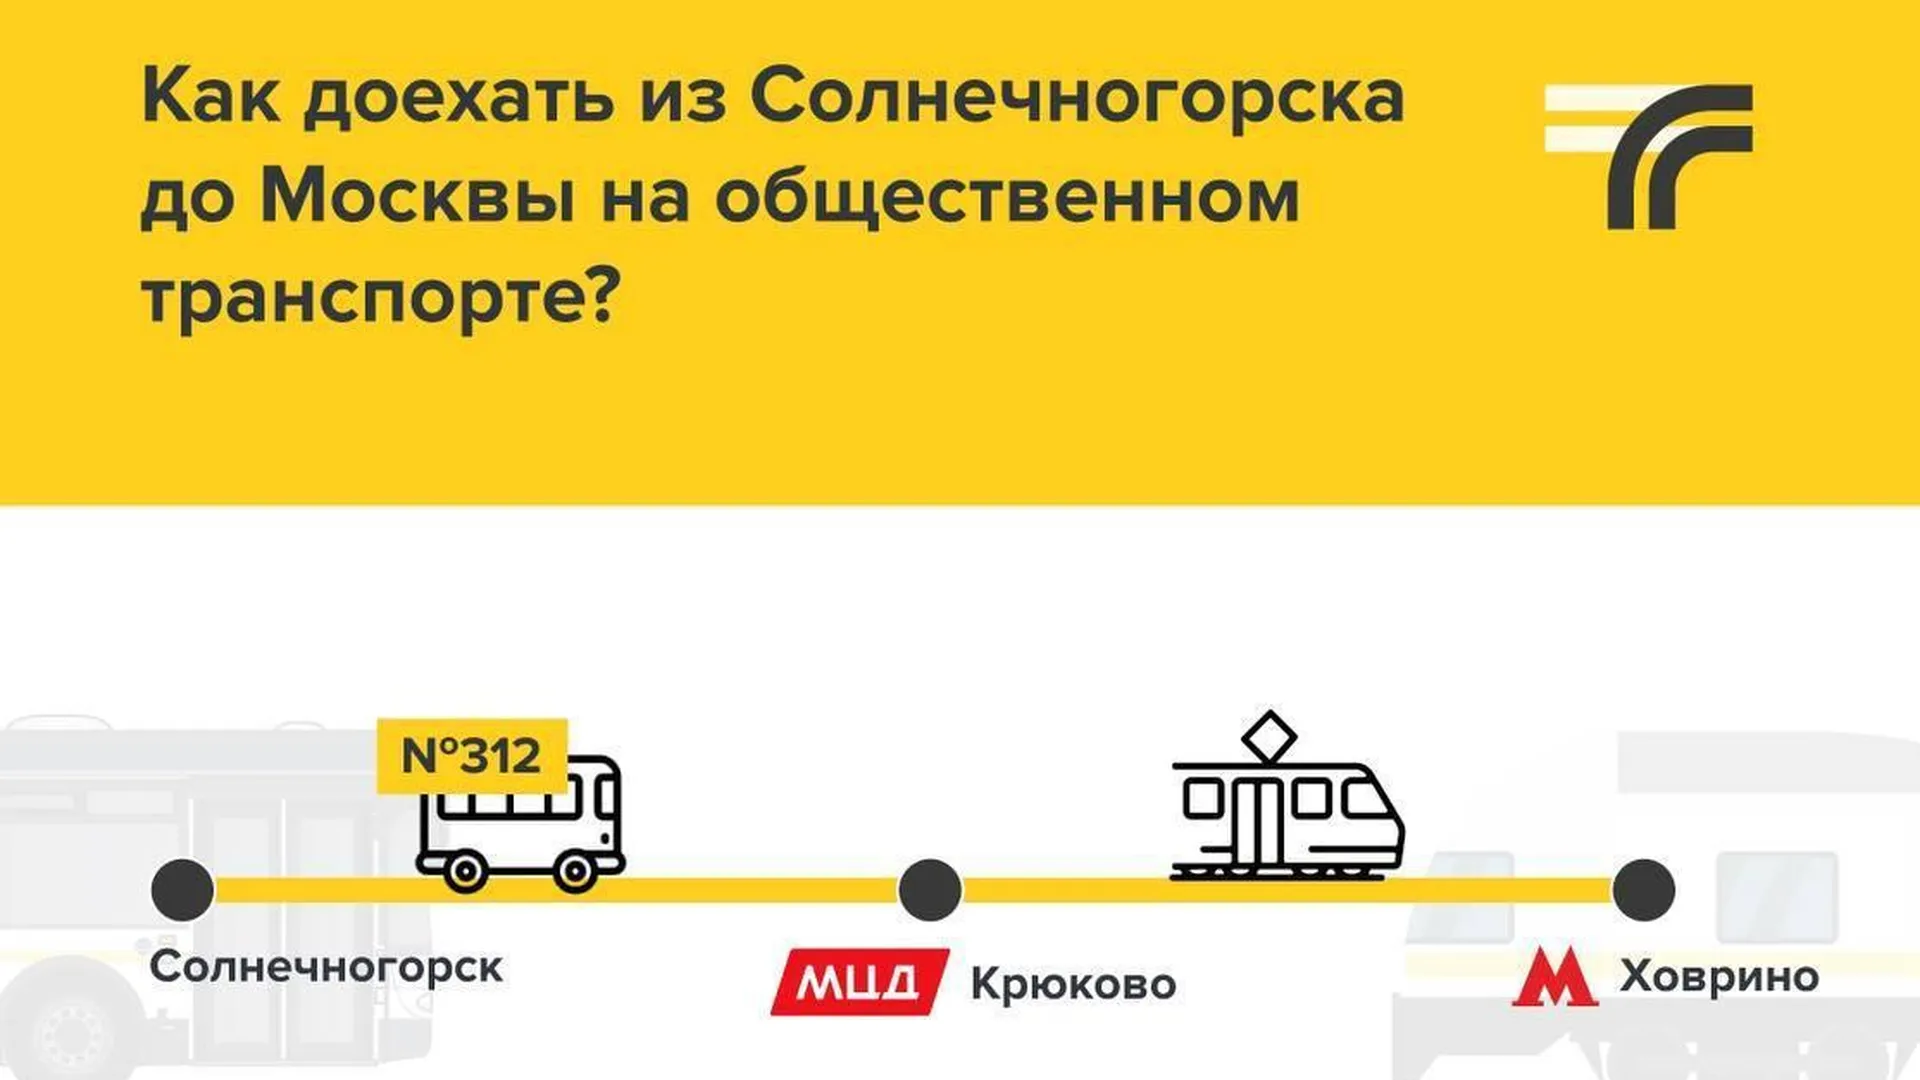 В Солнечногорске на маршруте № 312 до МЦД Крюково увеличат количество автобусов